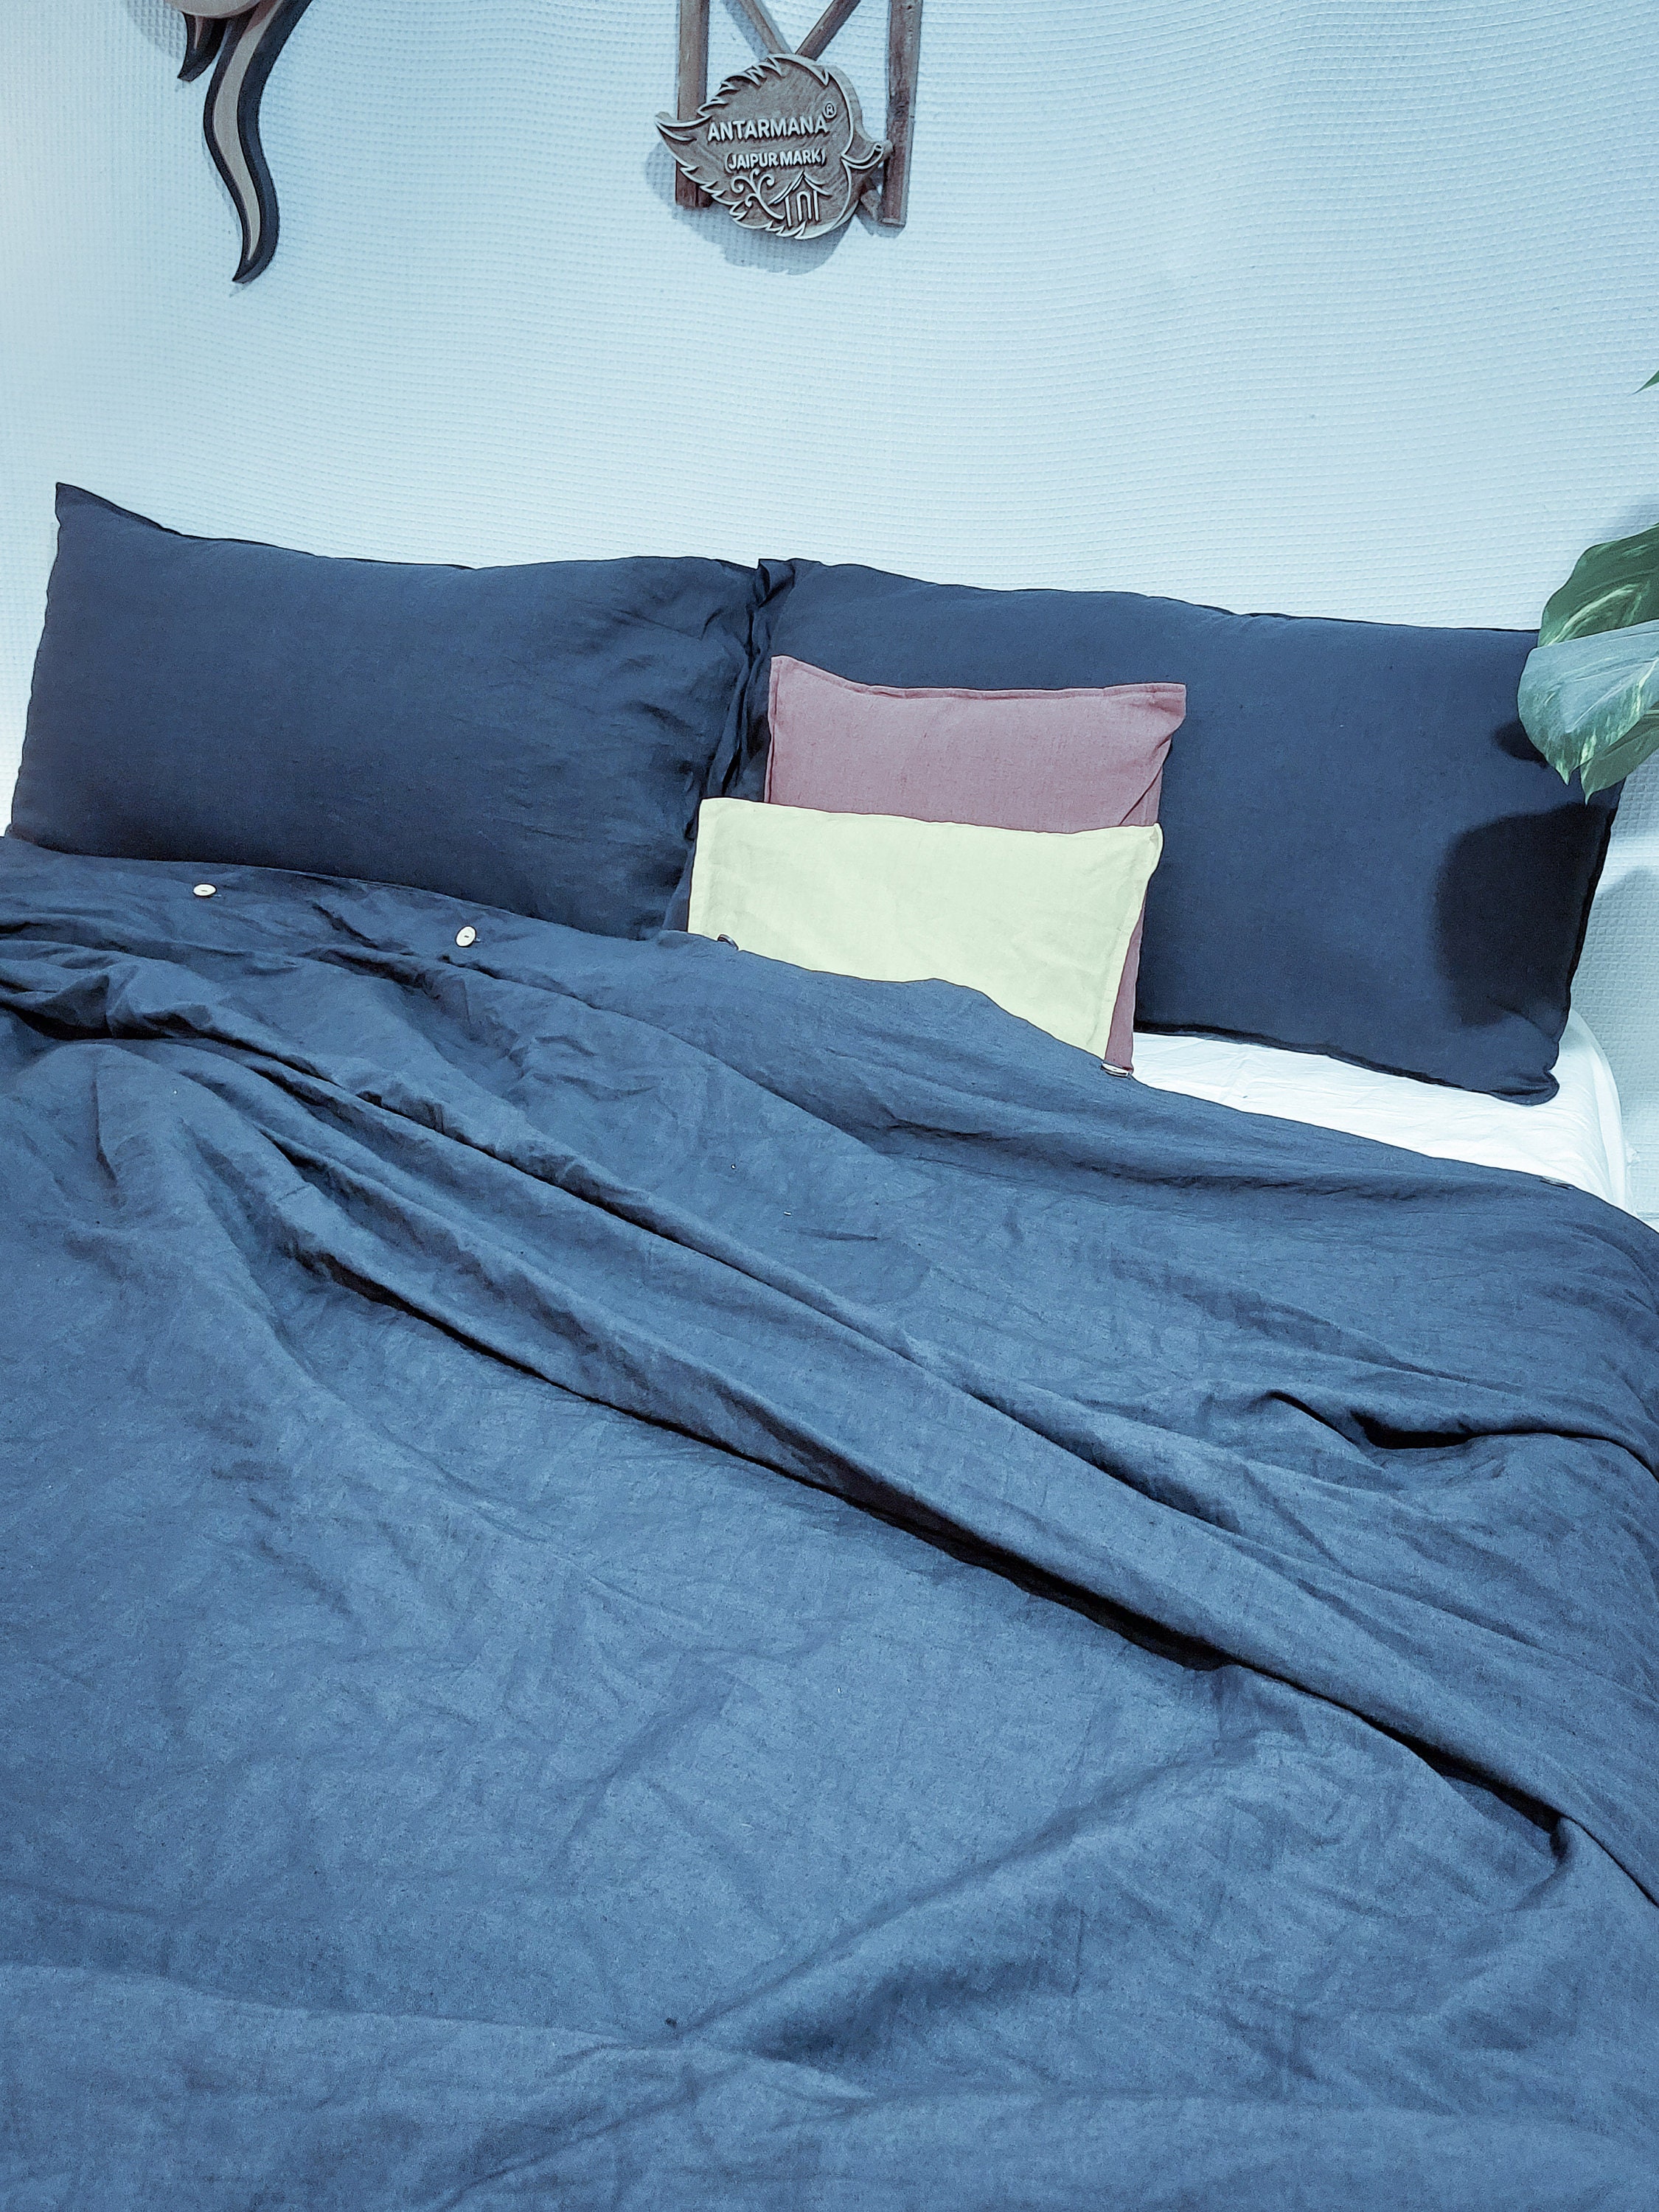 EXQ Home Cotton Denim Blue Duvet Cover Set King Size 3 Pcs, Super Soft Bedding Vintage Comforter Cover with Button Closure (Breathable)